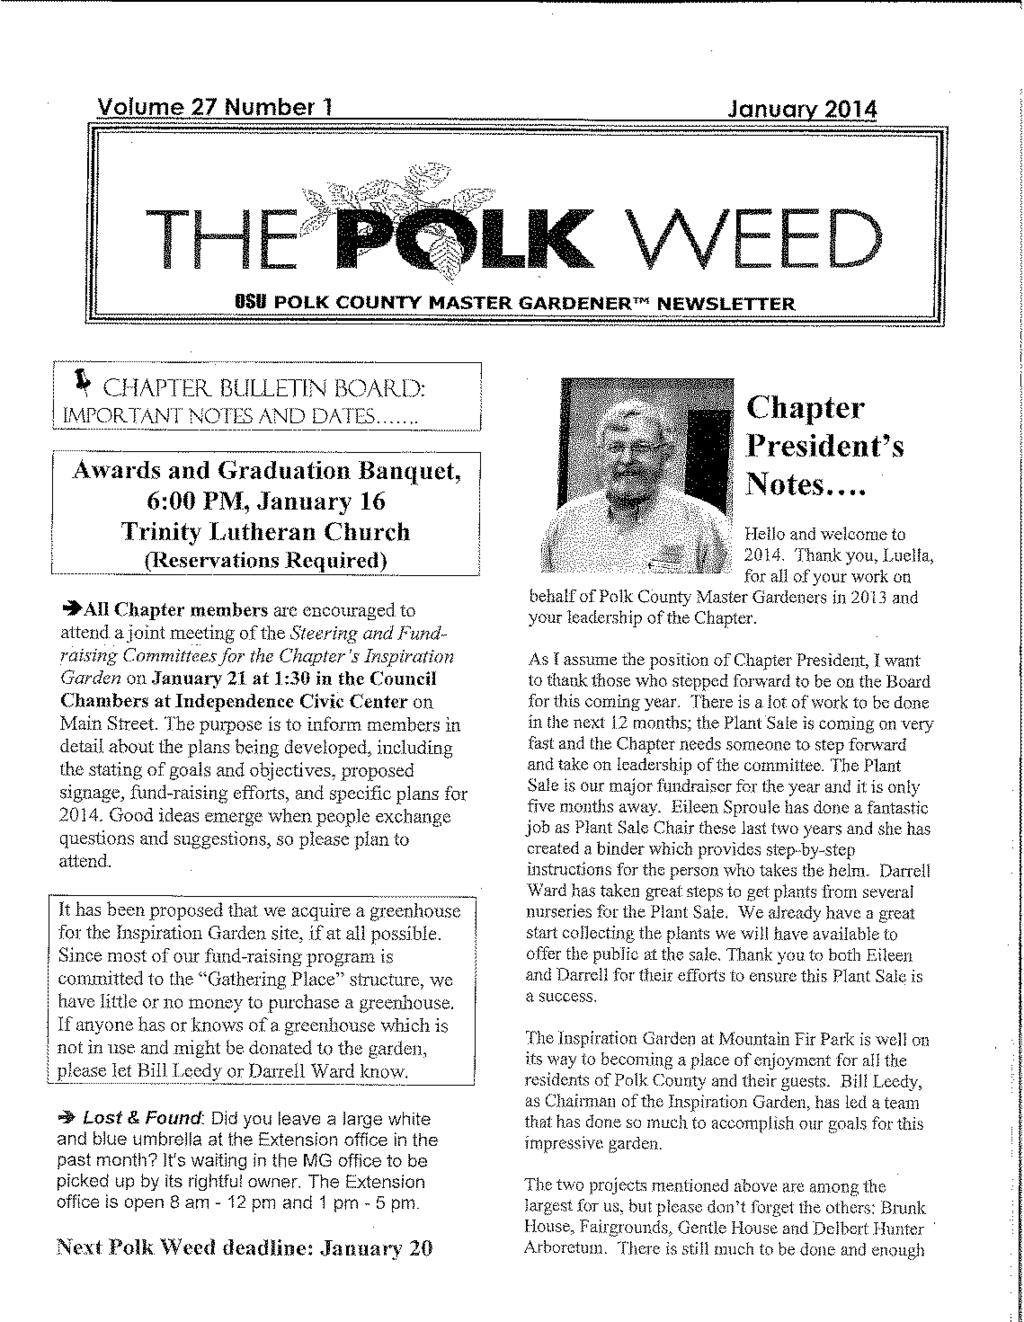 The Polk Weed